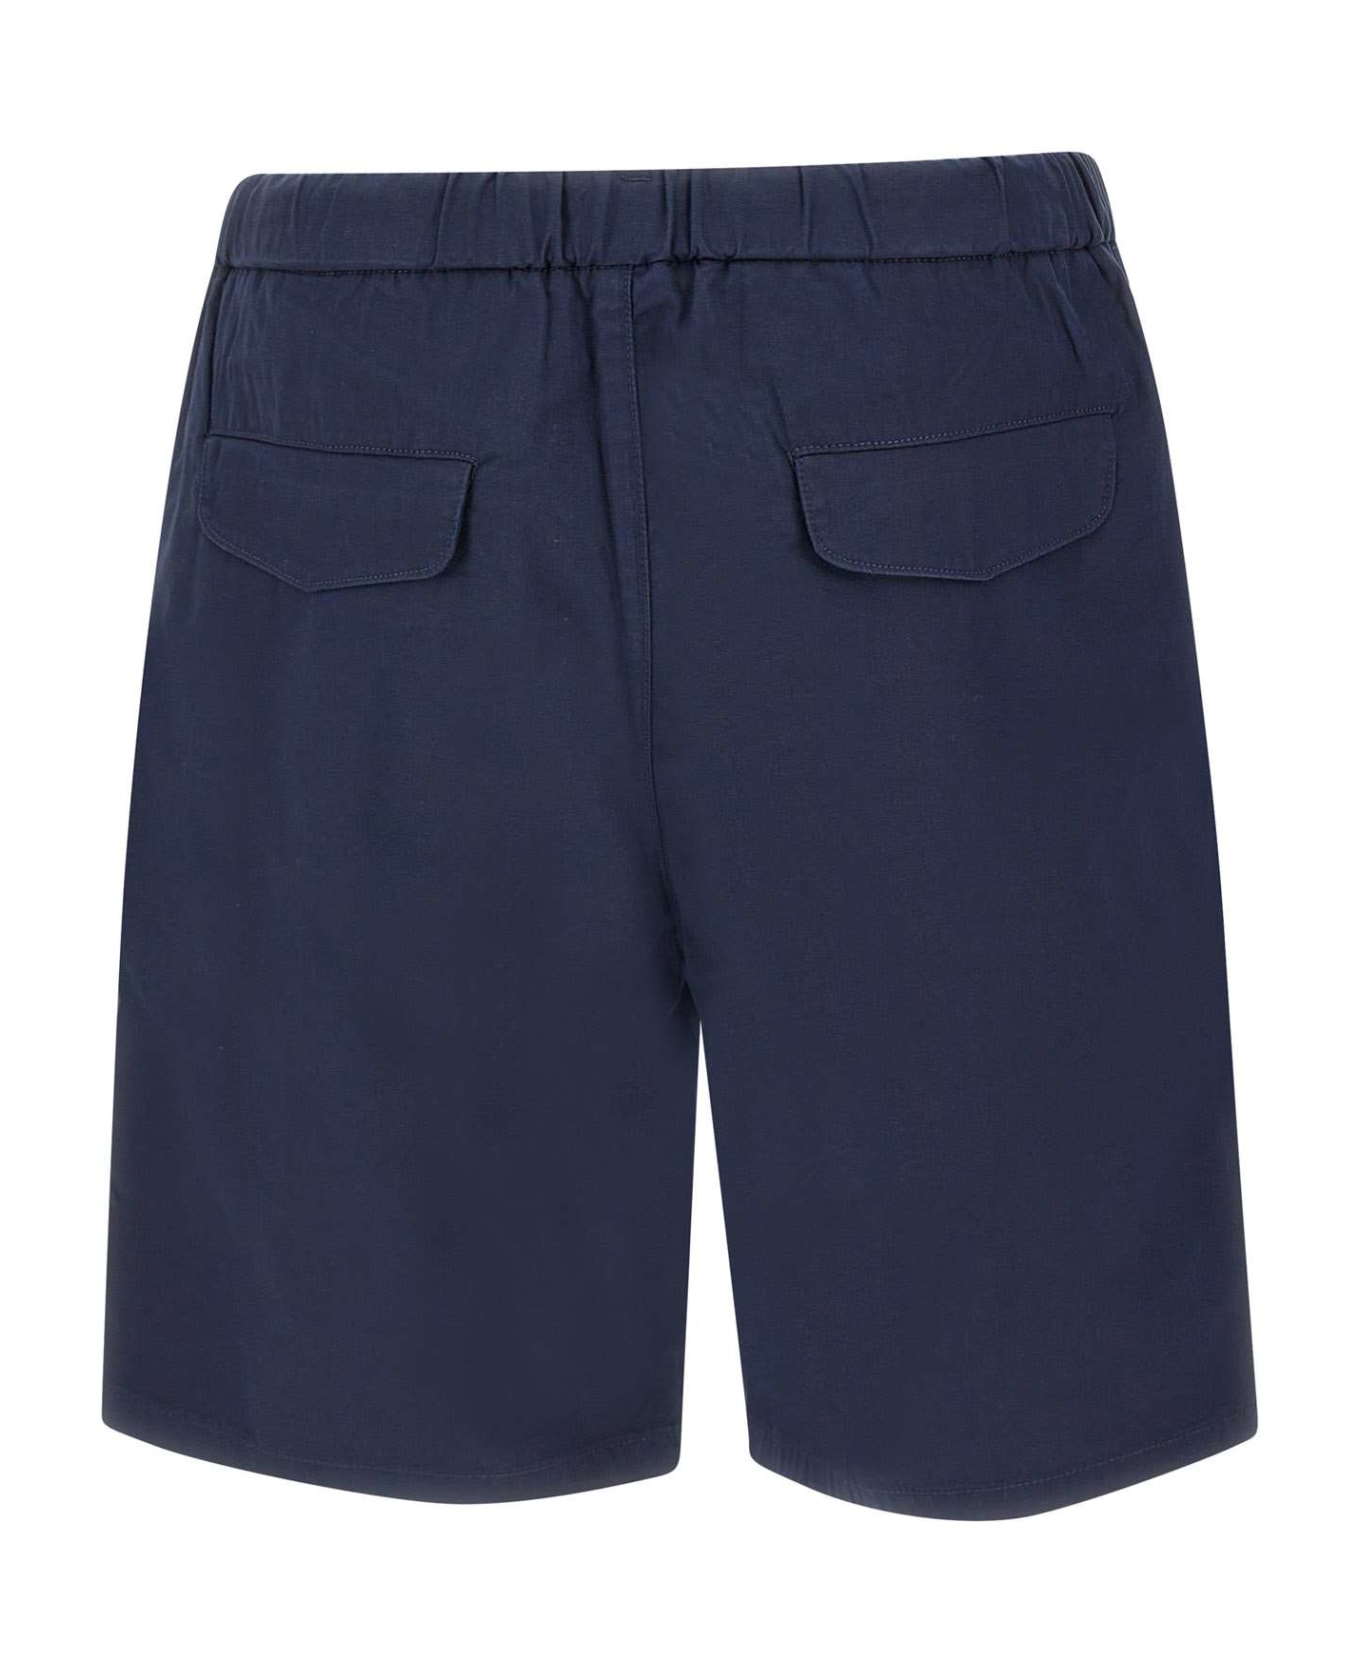 Sun 68 Shorts In Cotton - NAVY